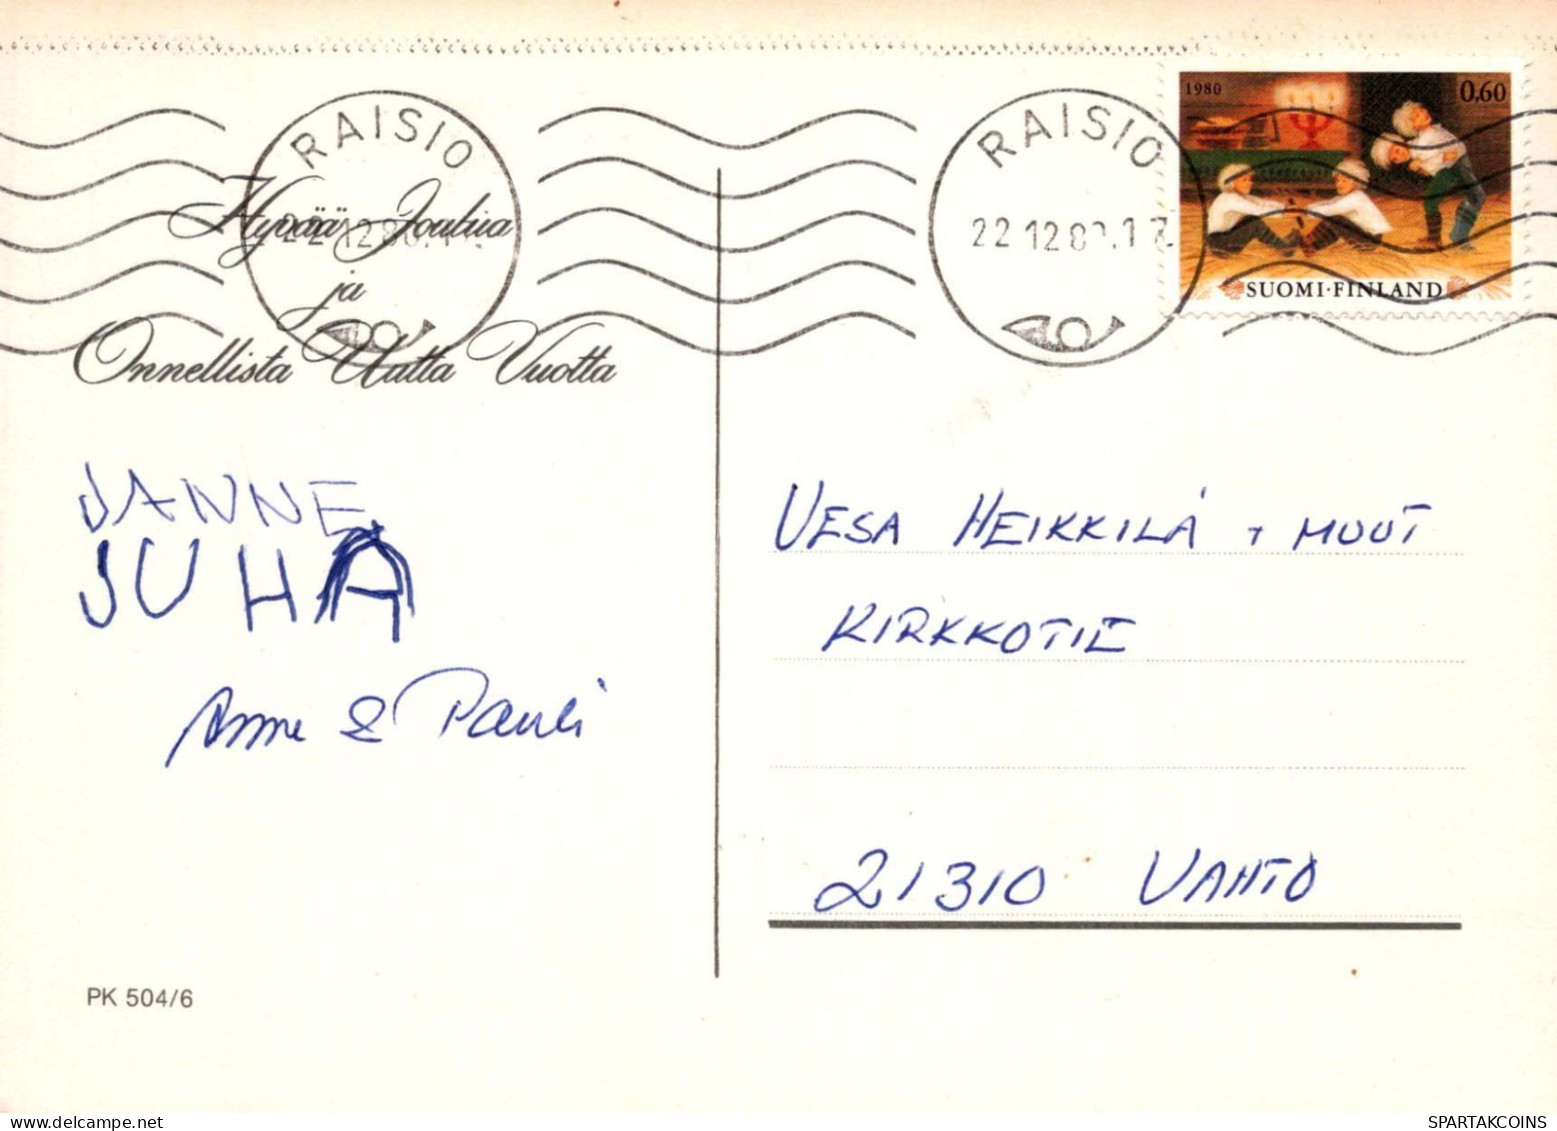 PAPÁ NOEL Feliz Año Navidad Vintage Tarjeta Postal CPSM #PBL236.ES - Kerstman